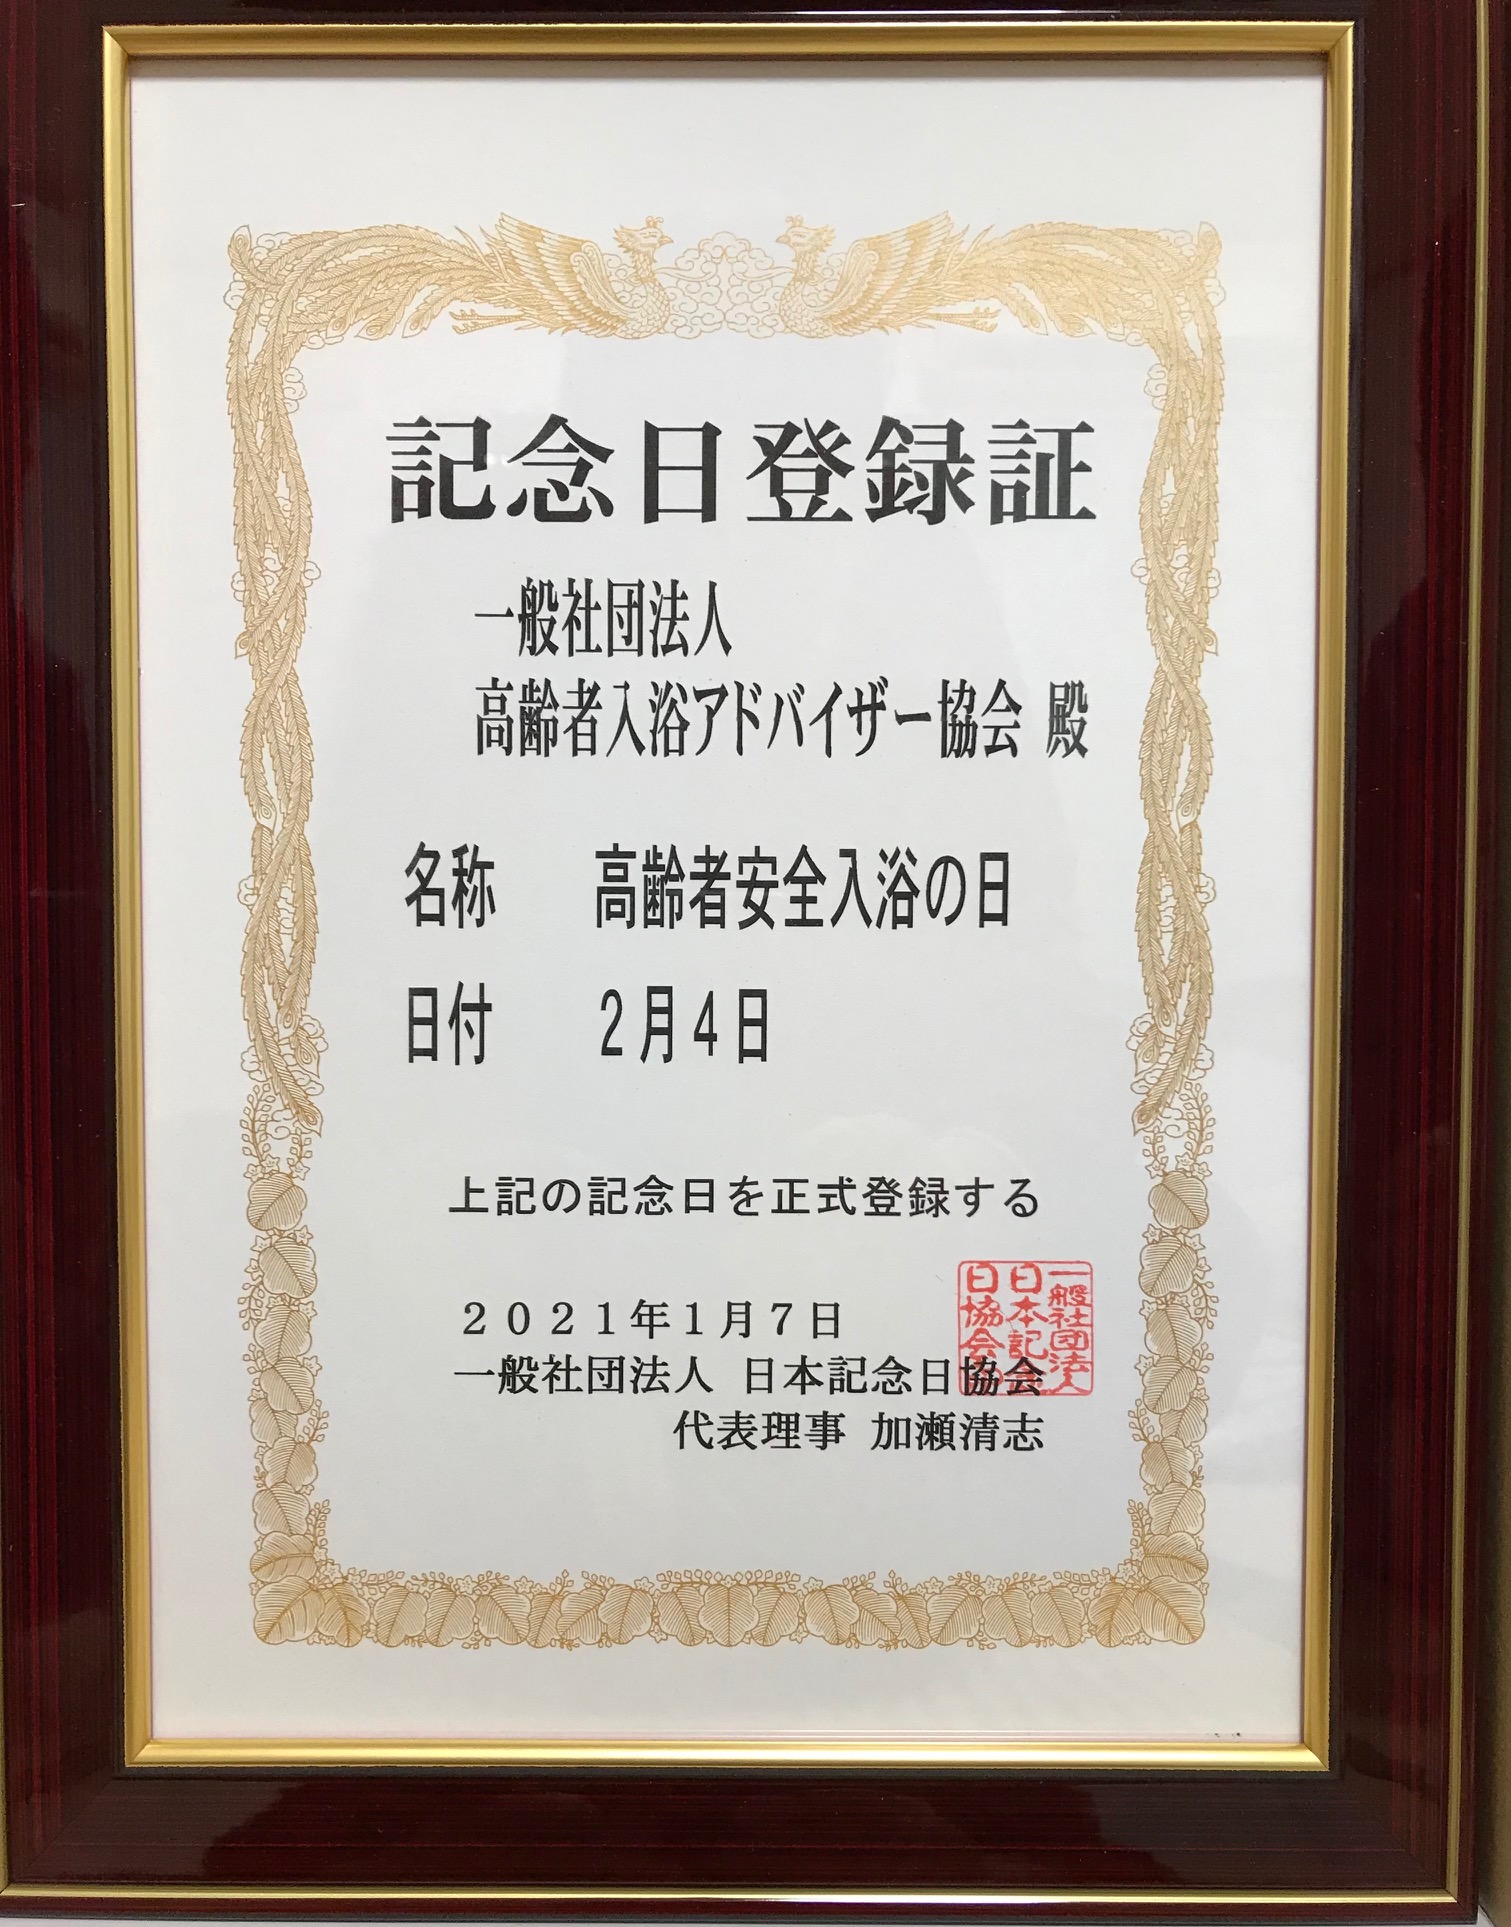 日本で初めて!! 高齢者の安全入浴に関する教本 高齢者入浴アドバイザー資格が取得できます 【お気にいる】